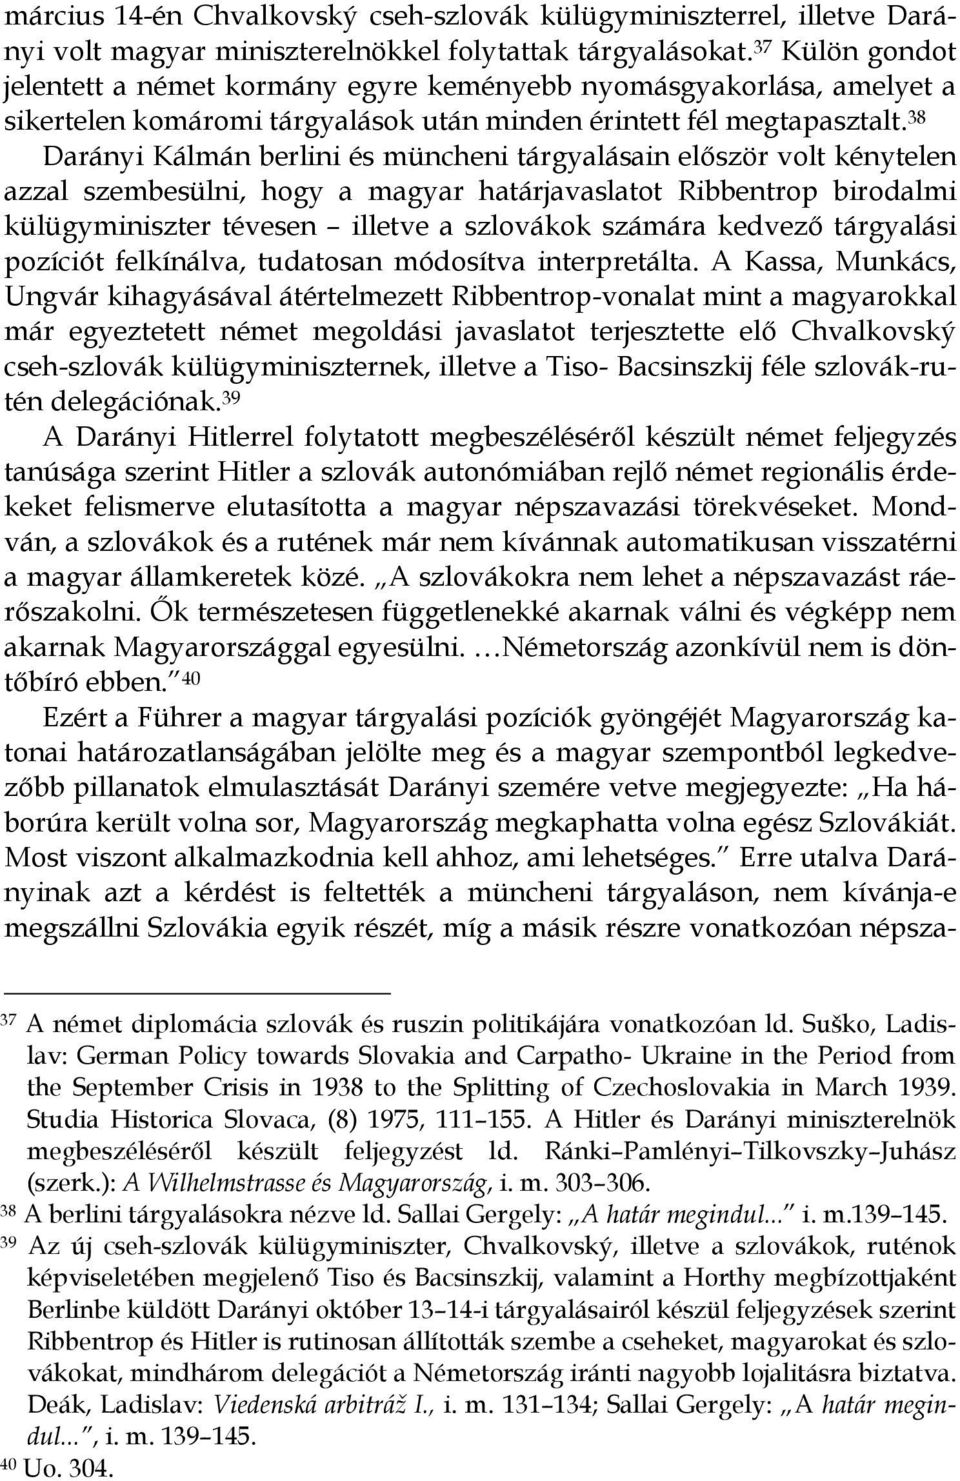 38 Darányi Kálmán berlini és müncheni tárgyalásain elıször volt kénytelen azzal szembesülni, hogy a magyar határjavaslatot Ribbentrop birodalmi külügyminiszter tévesen illetve a szlovákok számára